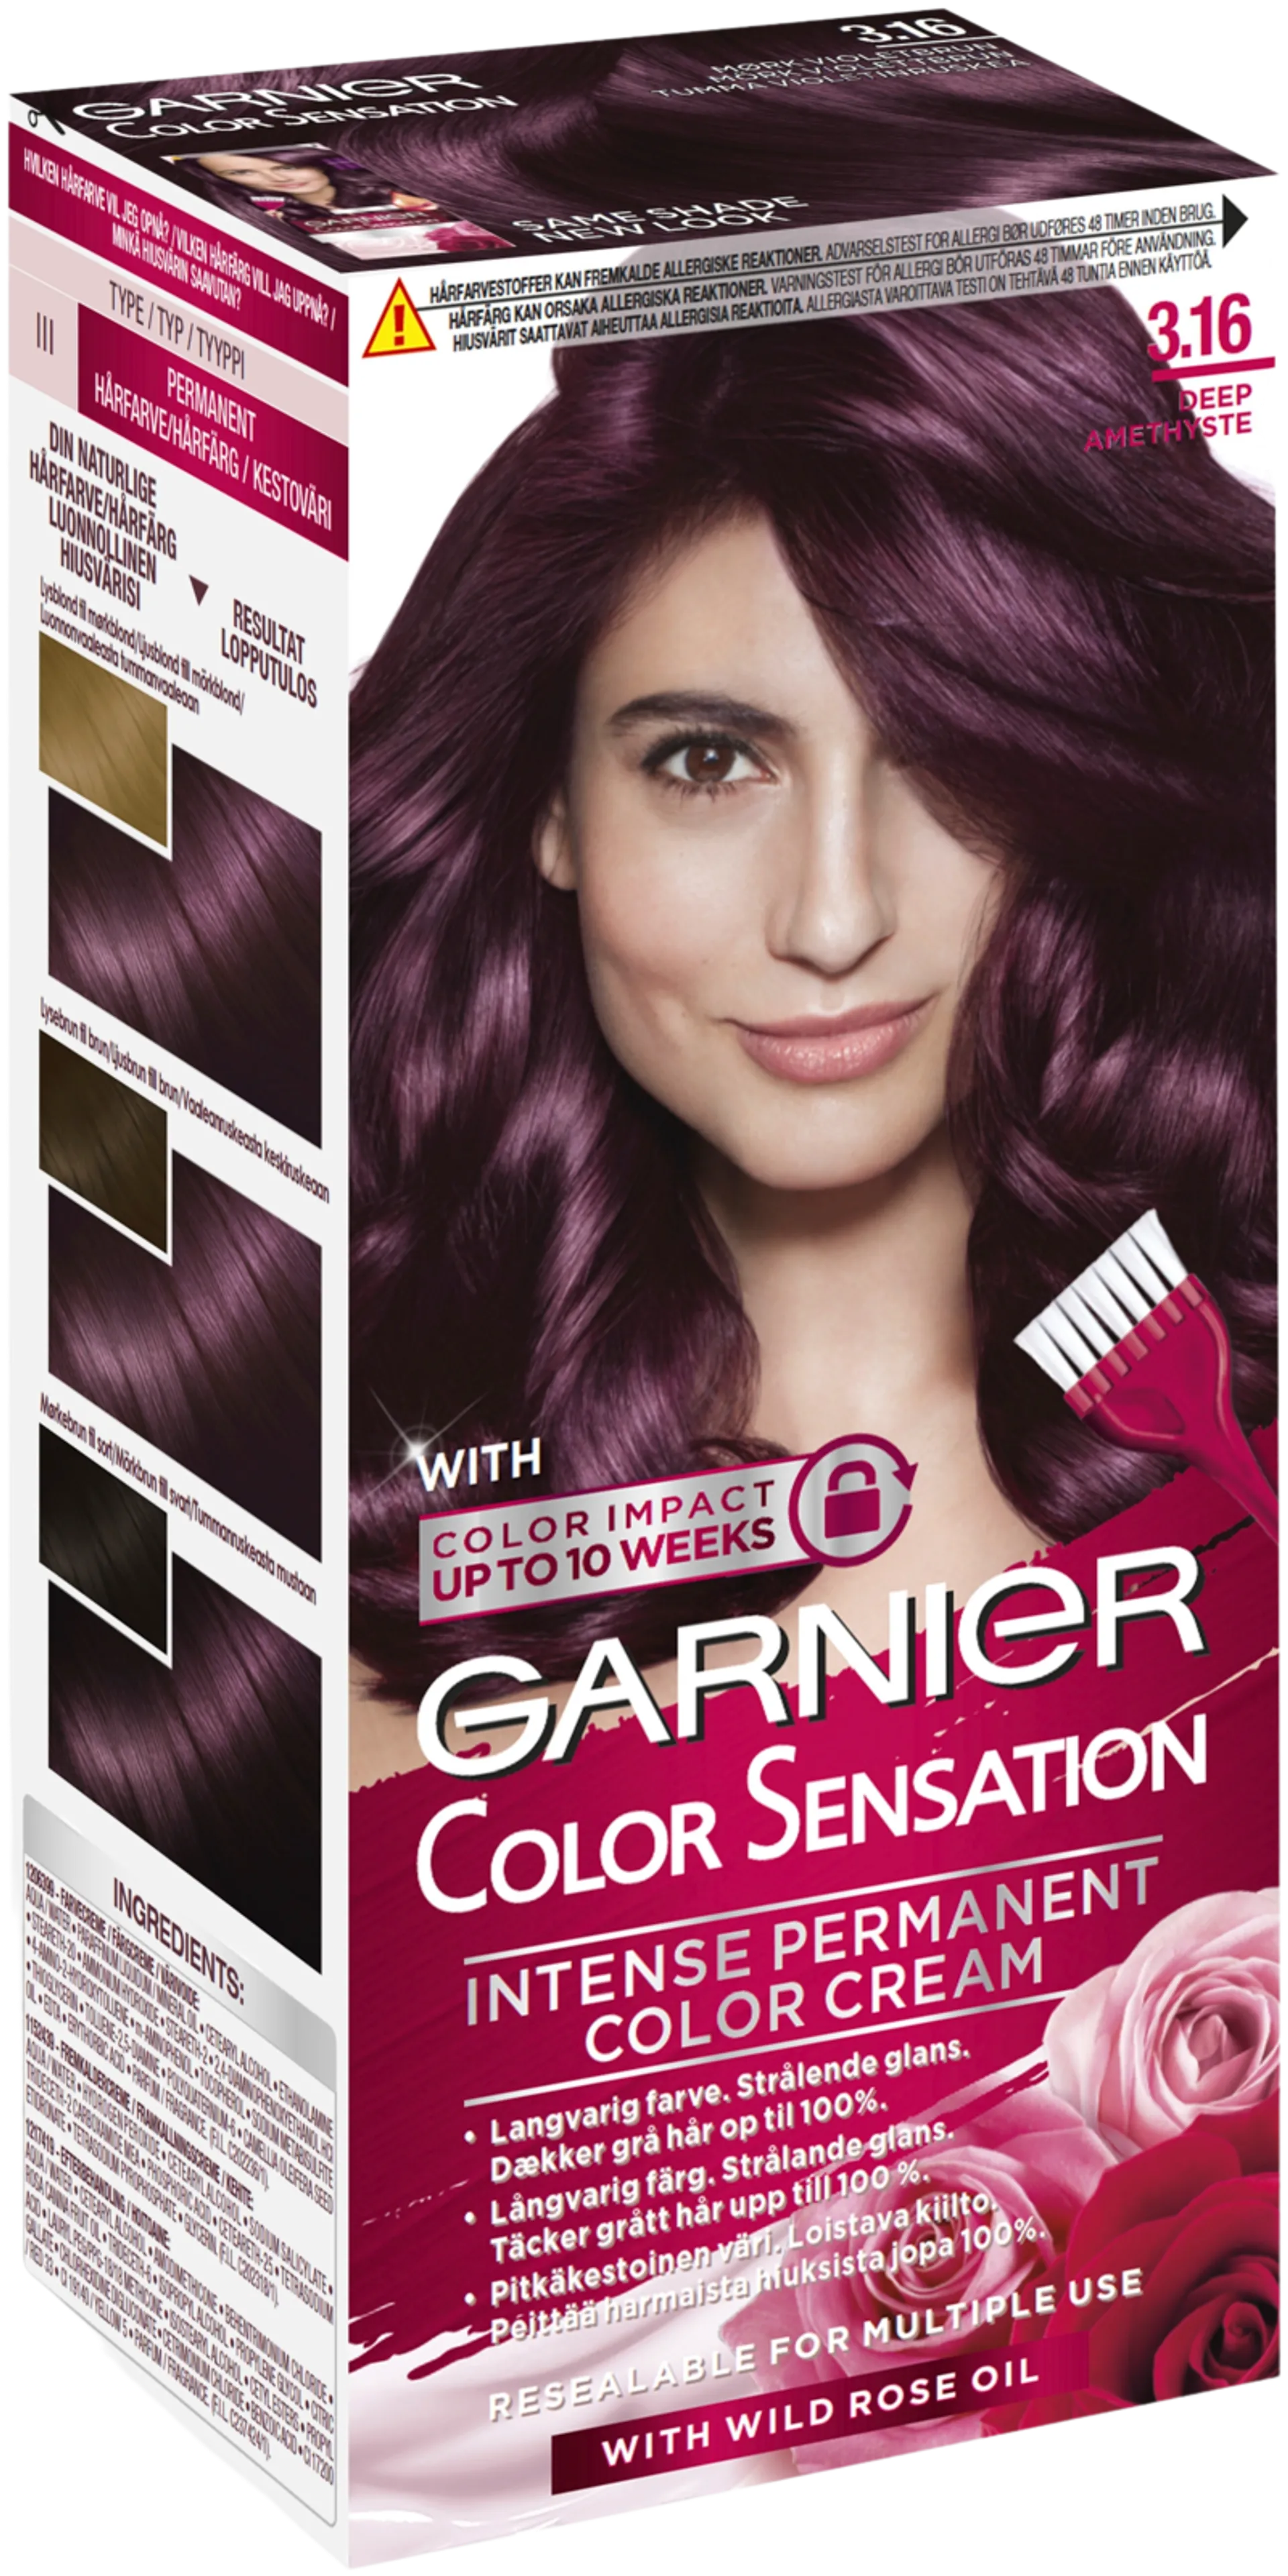 Garnier Color Sensation 3.16 Deep Amethyste Tumma violetinruskea kestoväri 1kpl - 1